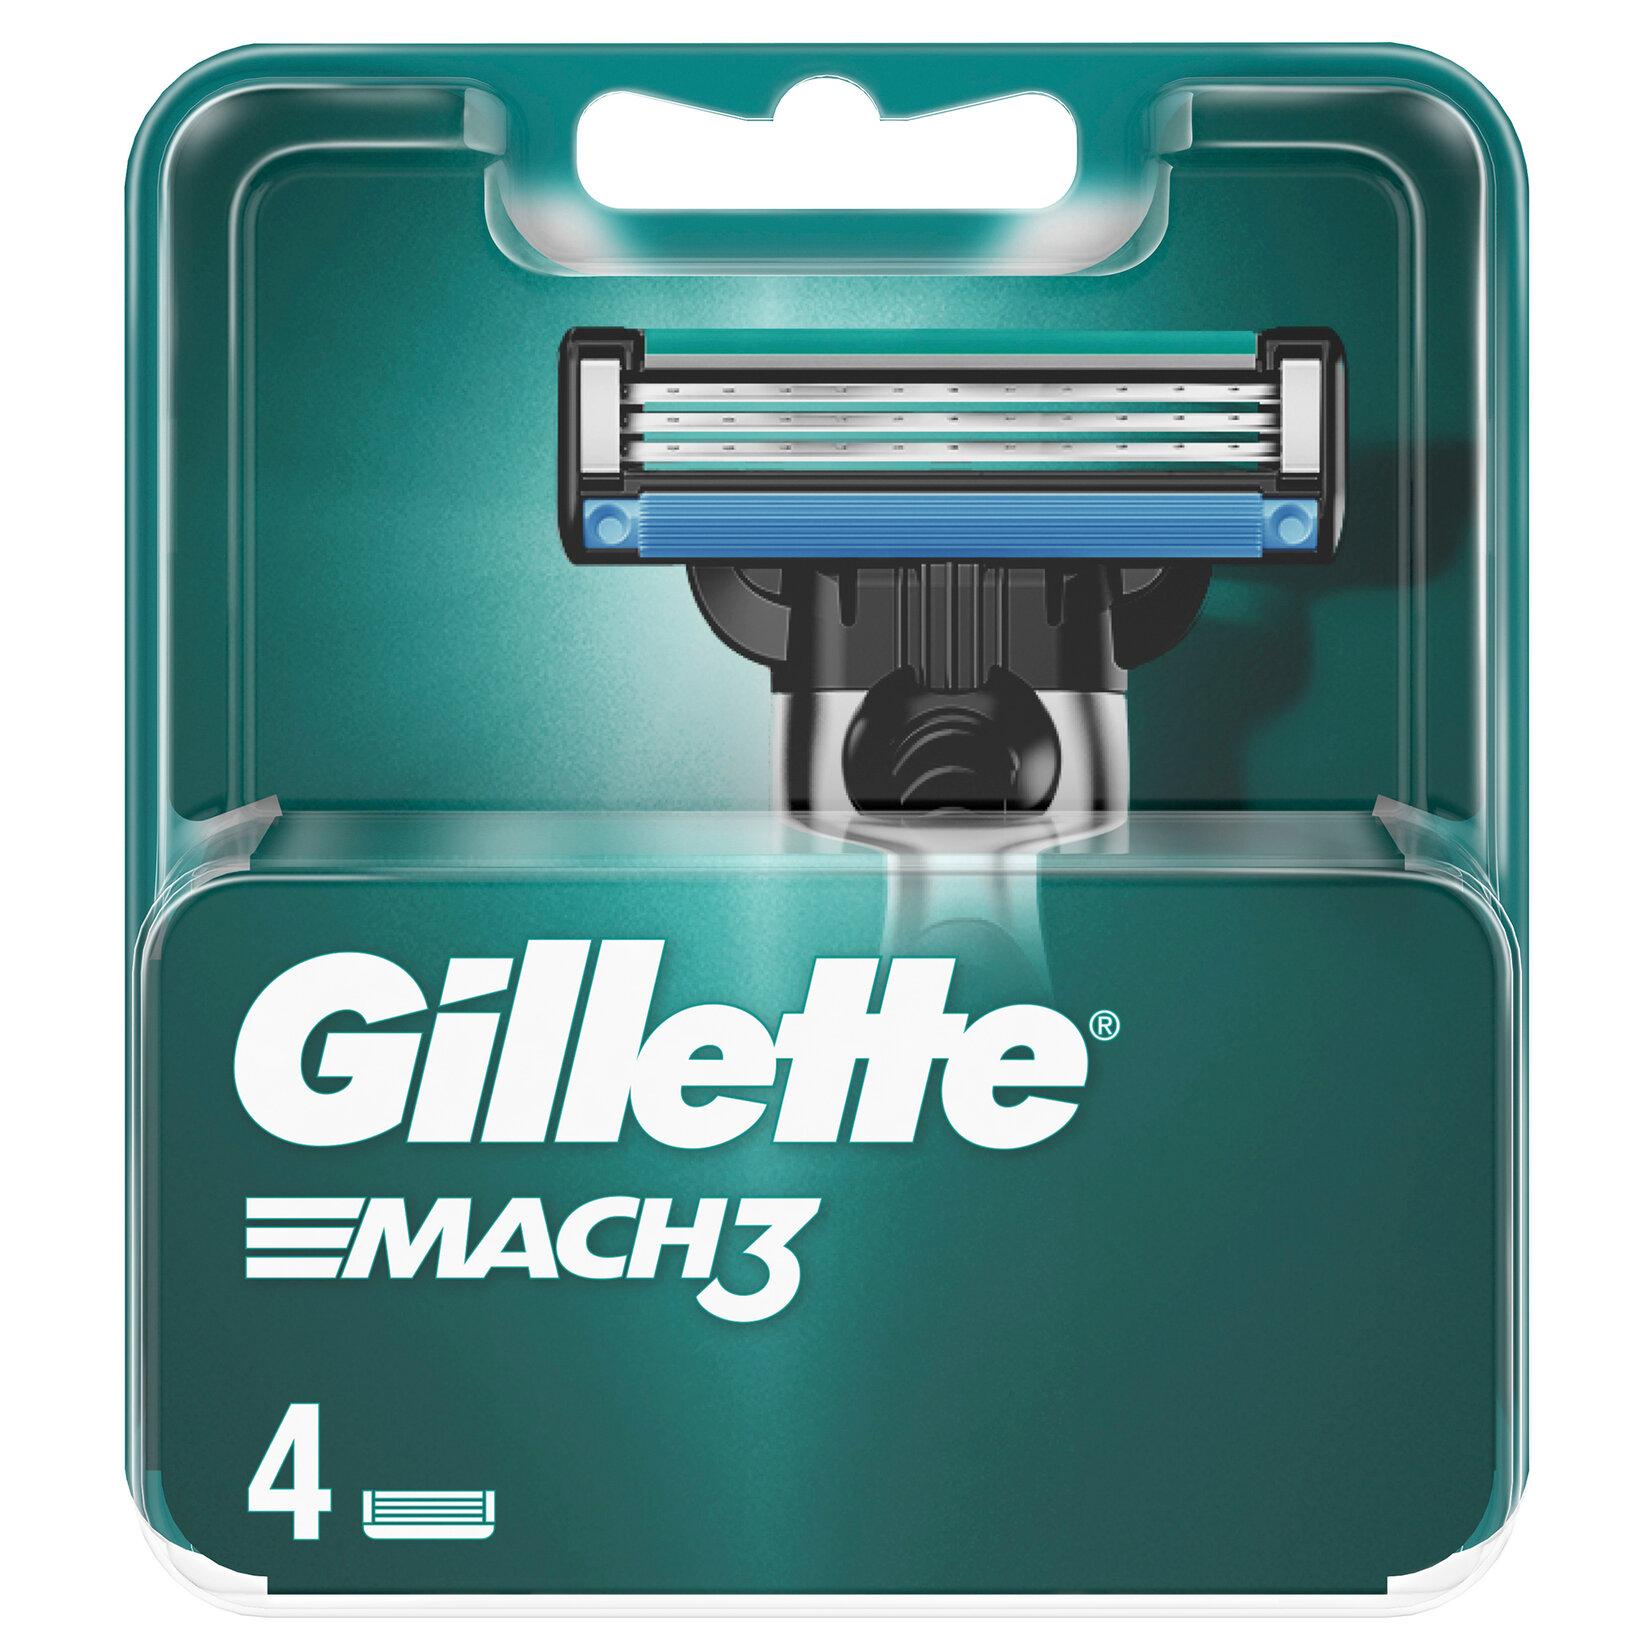 Gillette Mach3 Yedek Tıraş Bıçağı 4 Adet